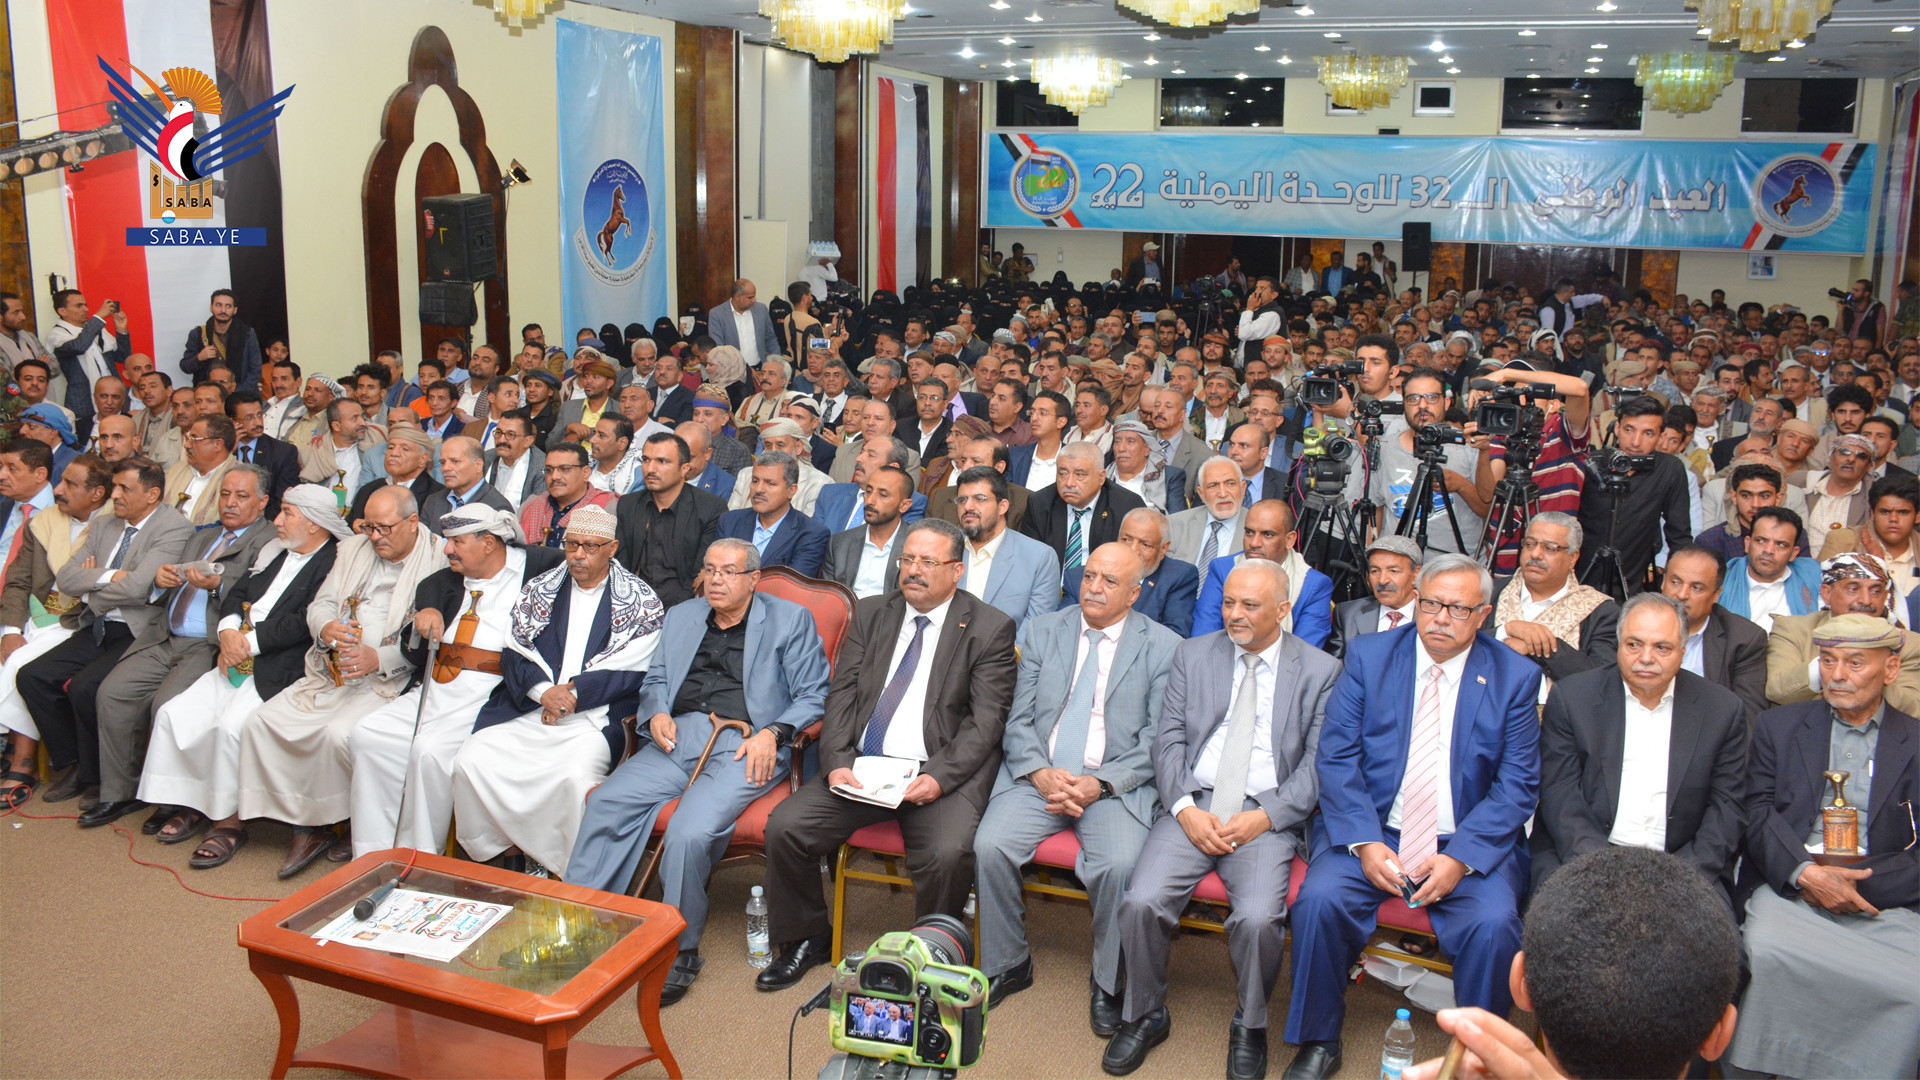 المؤتمر الشعبي ينظم حفلا بمناسبة العيد الوطني للجمهورية اليمنية 22 مايو